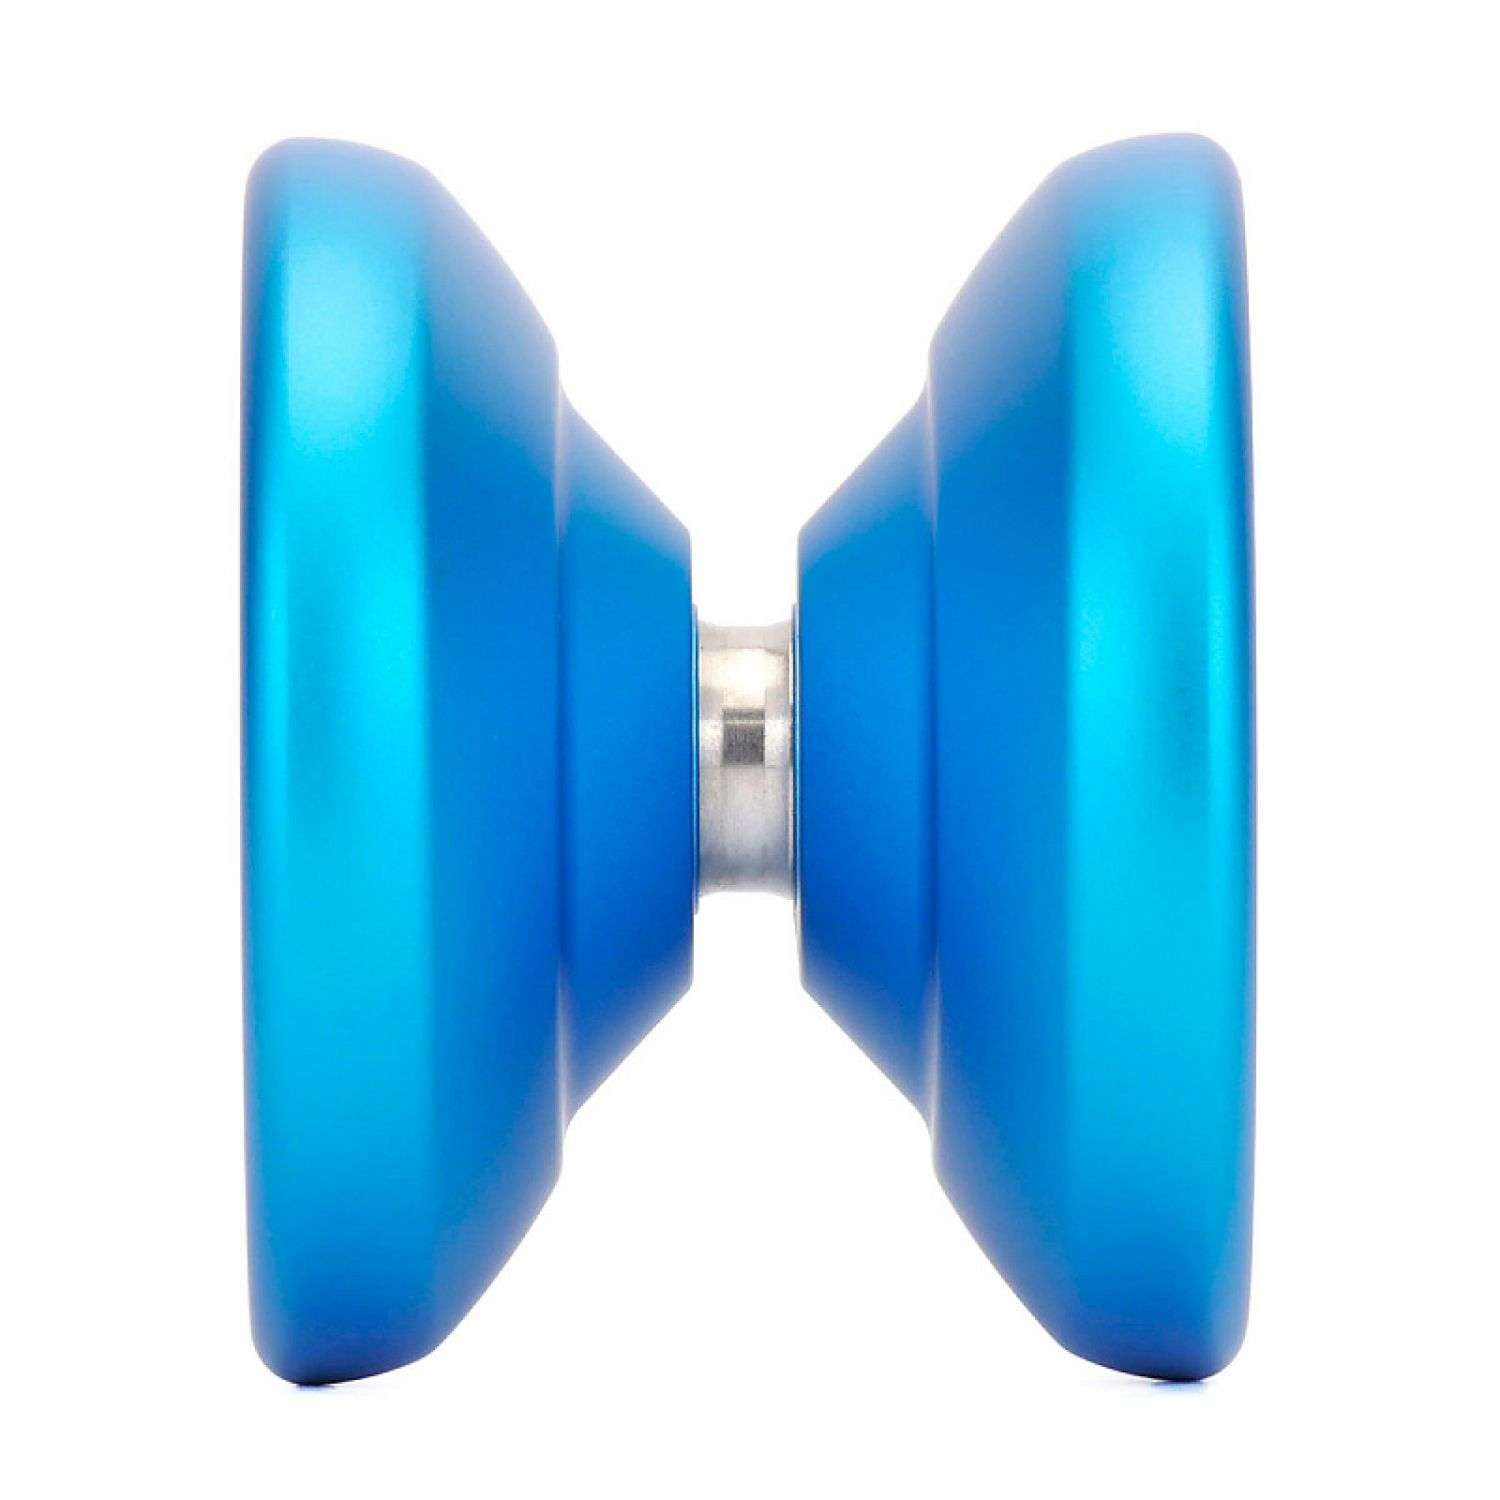 Развивающая игрушка YoYoFactory Йо-йо Shutter голубой - фото 2